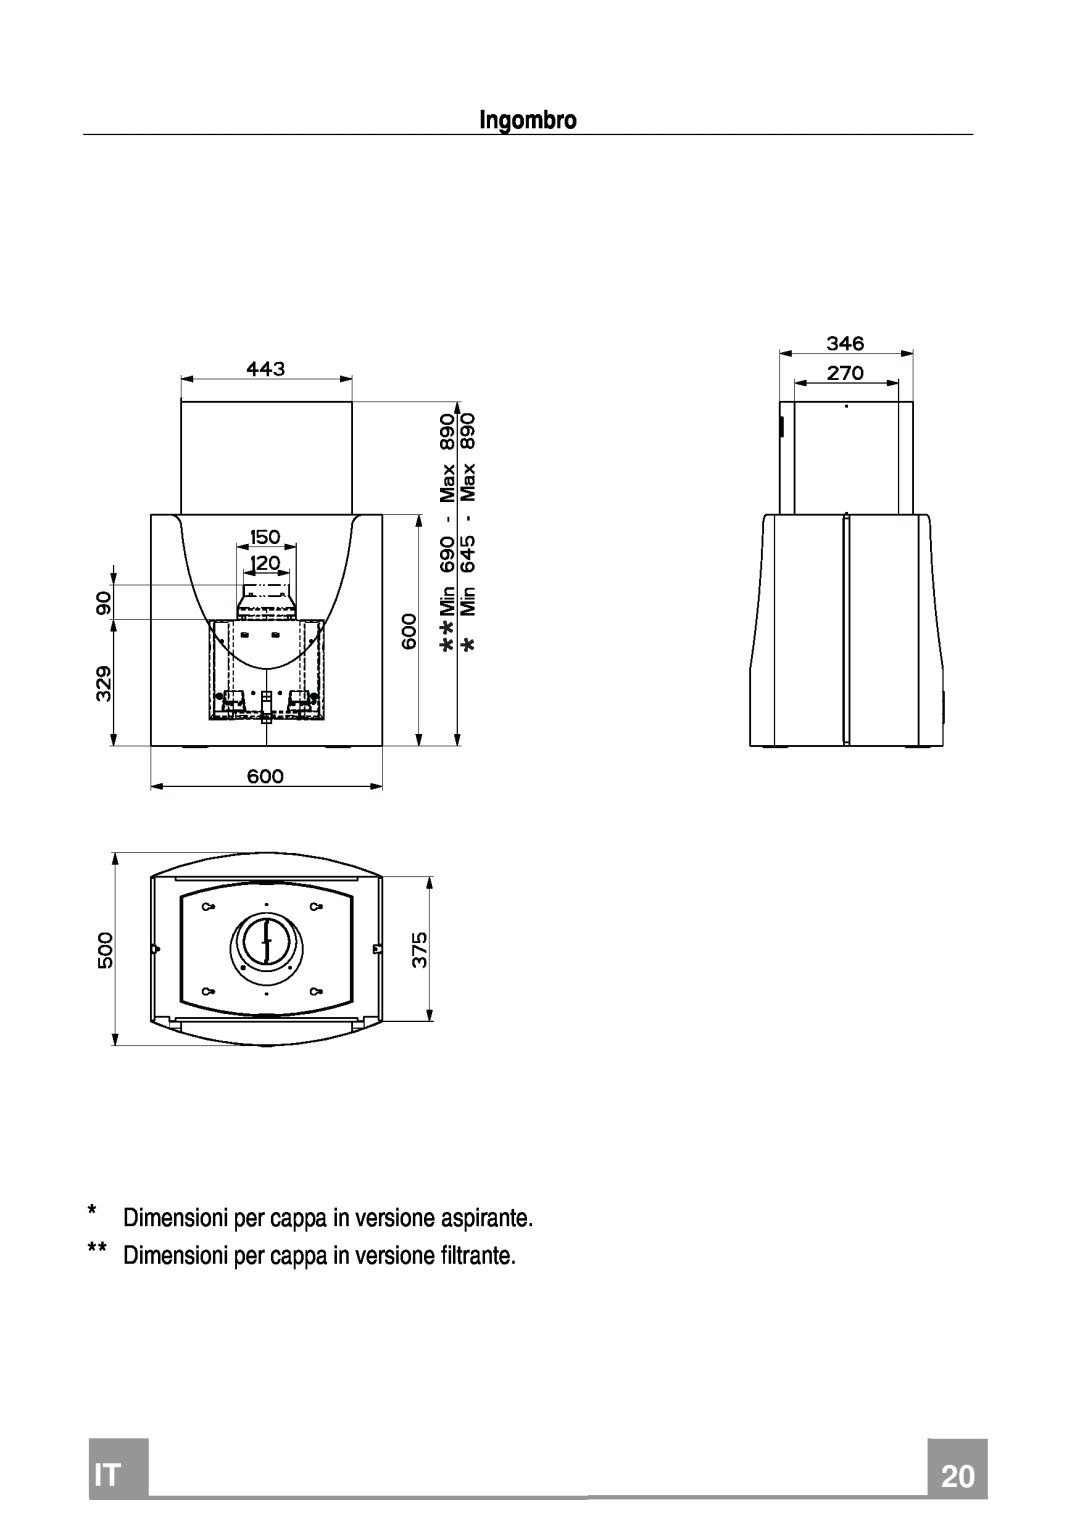 Franke Consumer Products FDMO 607 I manual Ingombro, Dimensioni per cappa in versione aspirante 